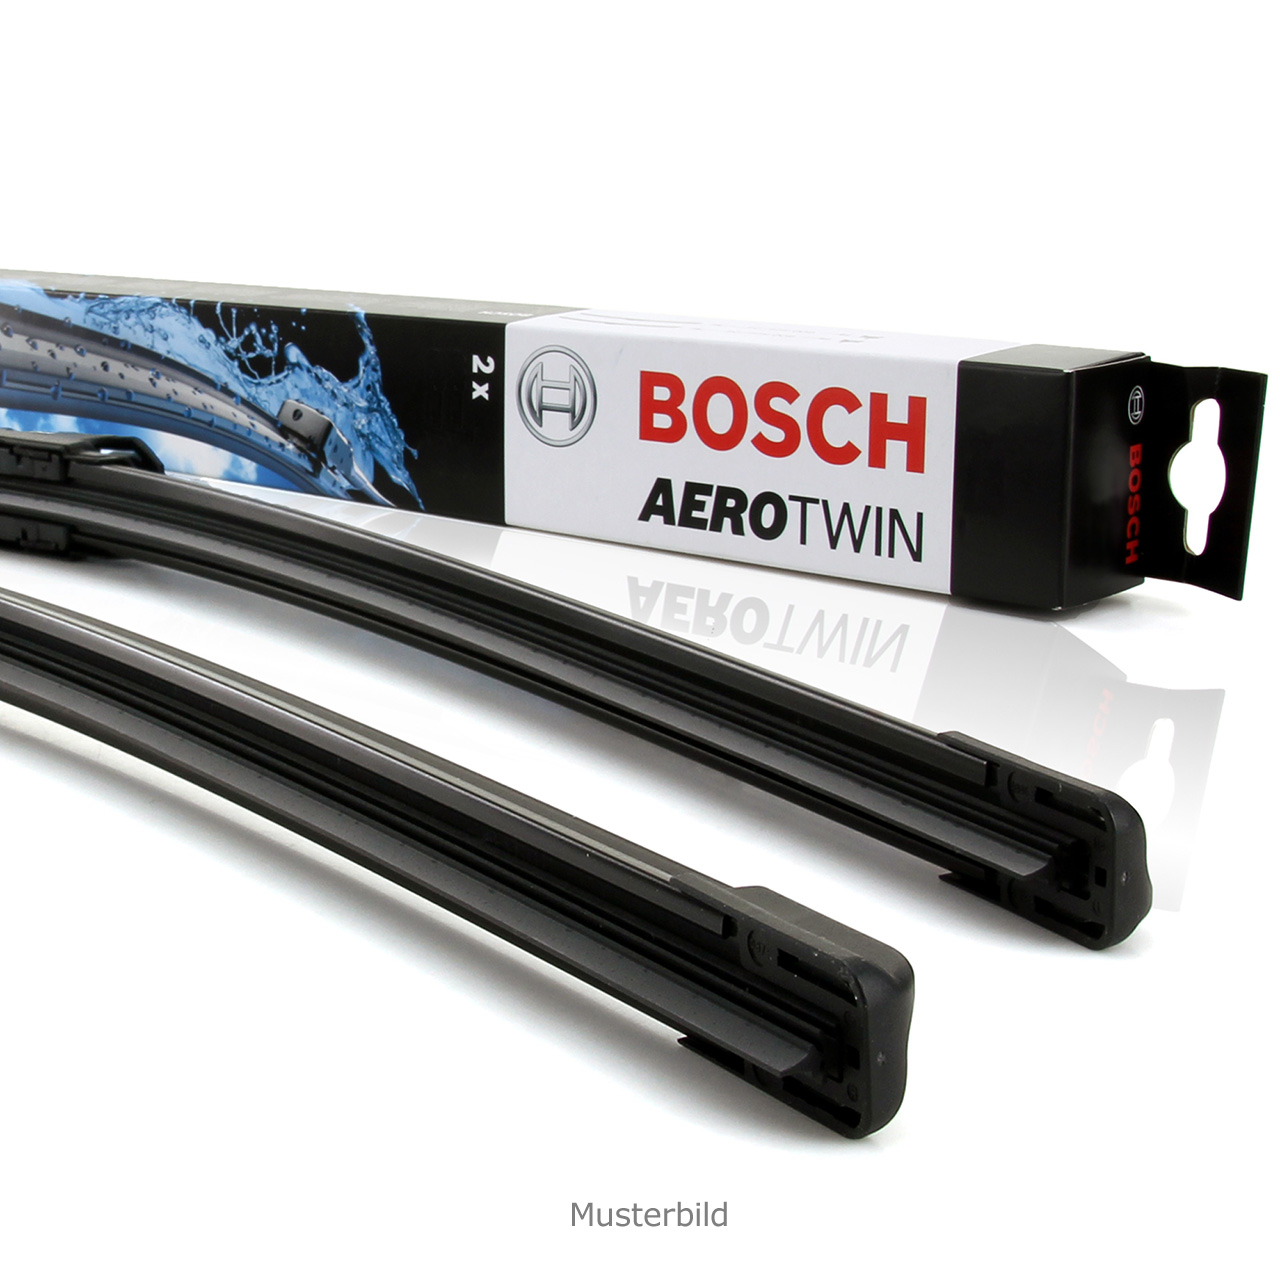 Neues Aerotwin J.E.T Blade von Bosch mit im Wischblatt integrierten  Spritzdüsen - Bosch Media Service